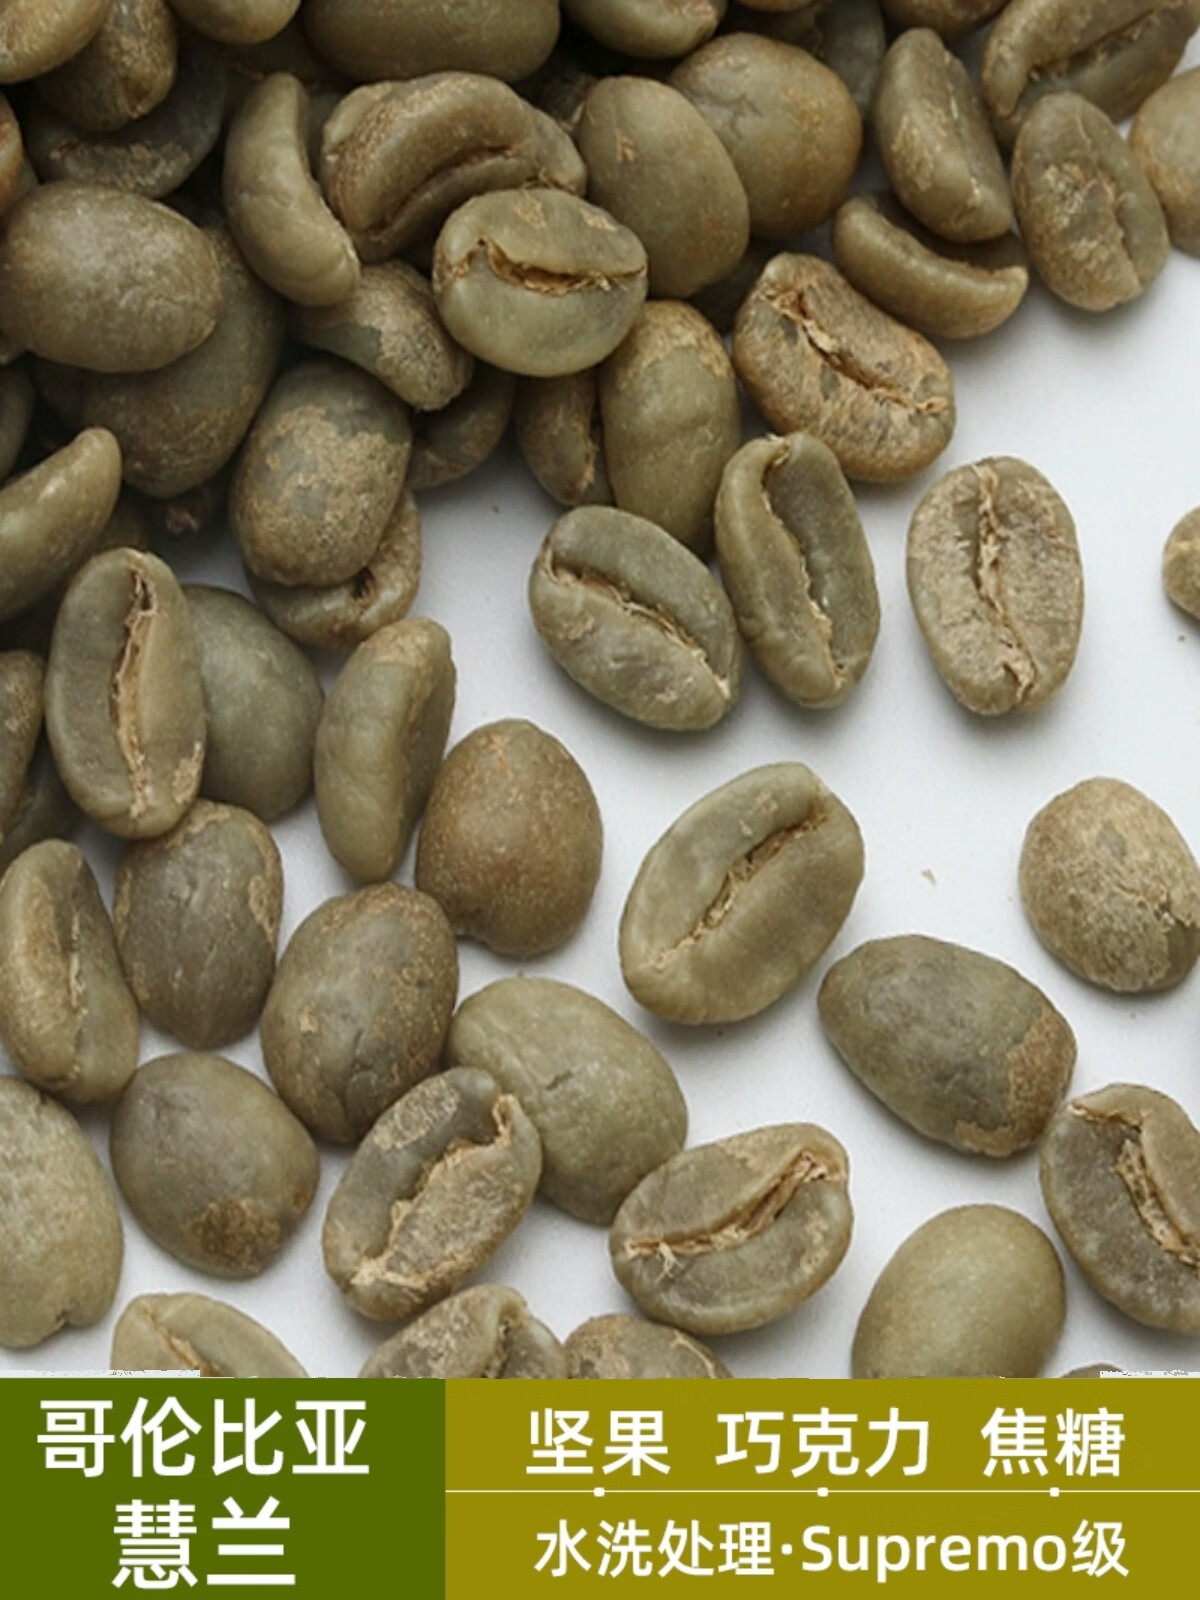 食芳溢绿之素 新产季哥伦比亚慧兰进口咖啡生豆原料阿拉比卡Sup代烘焙 500g 生豆